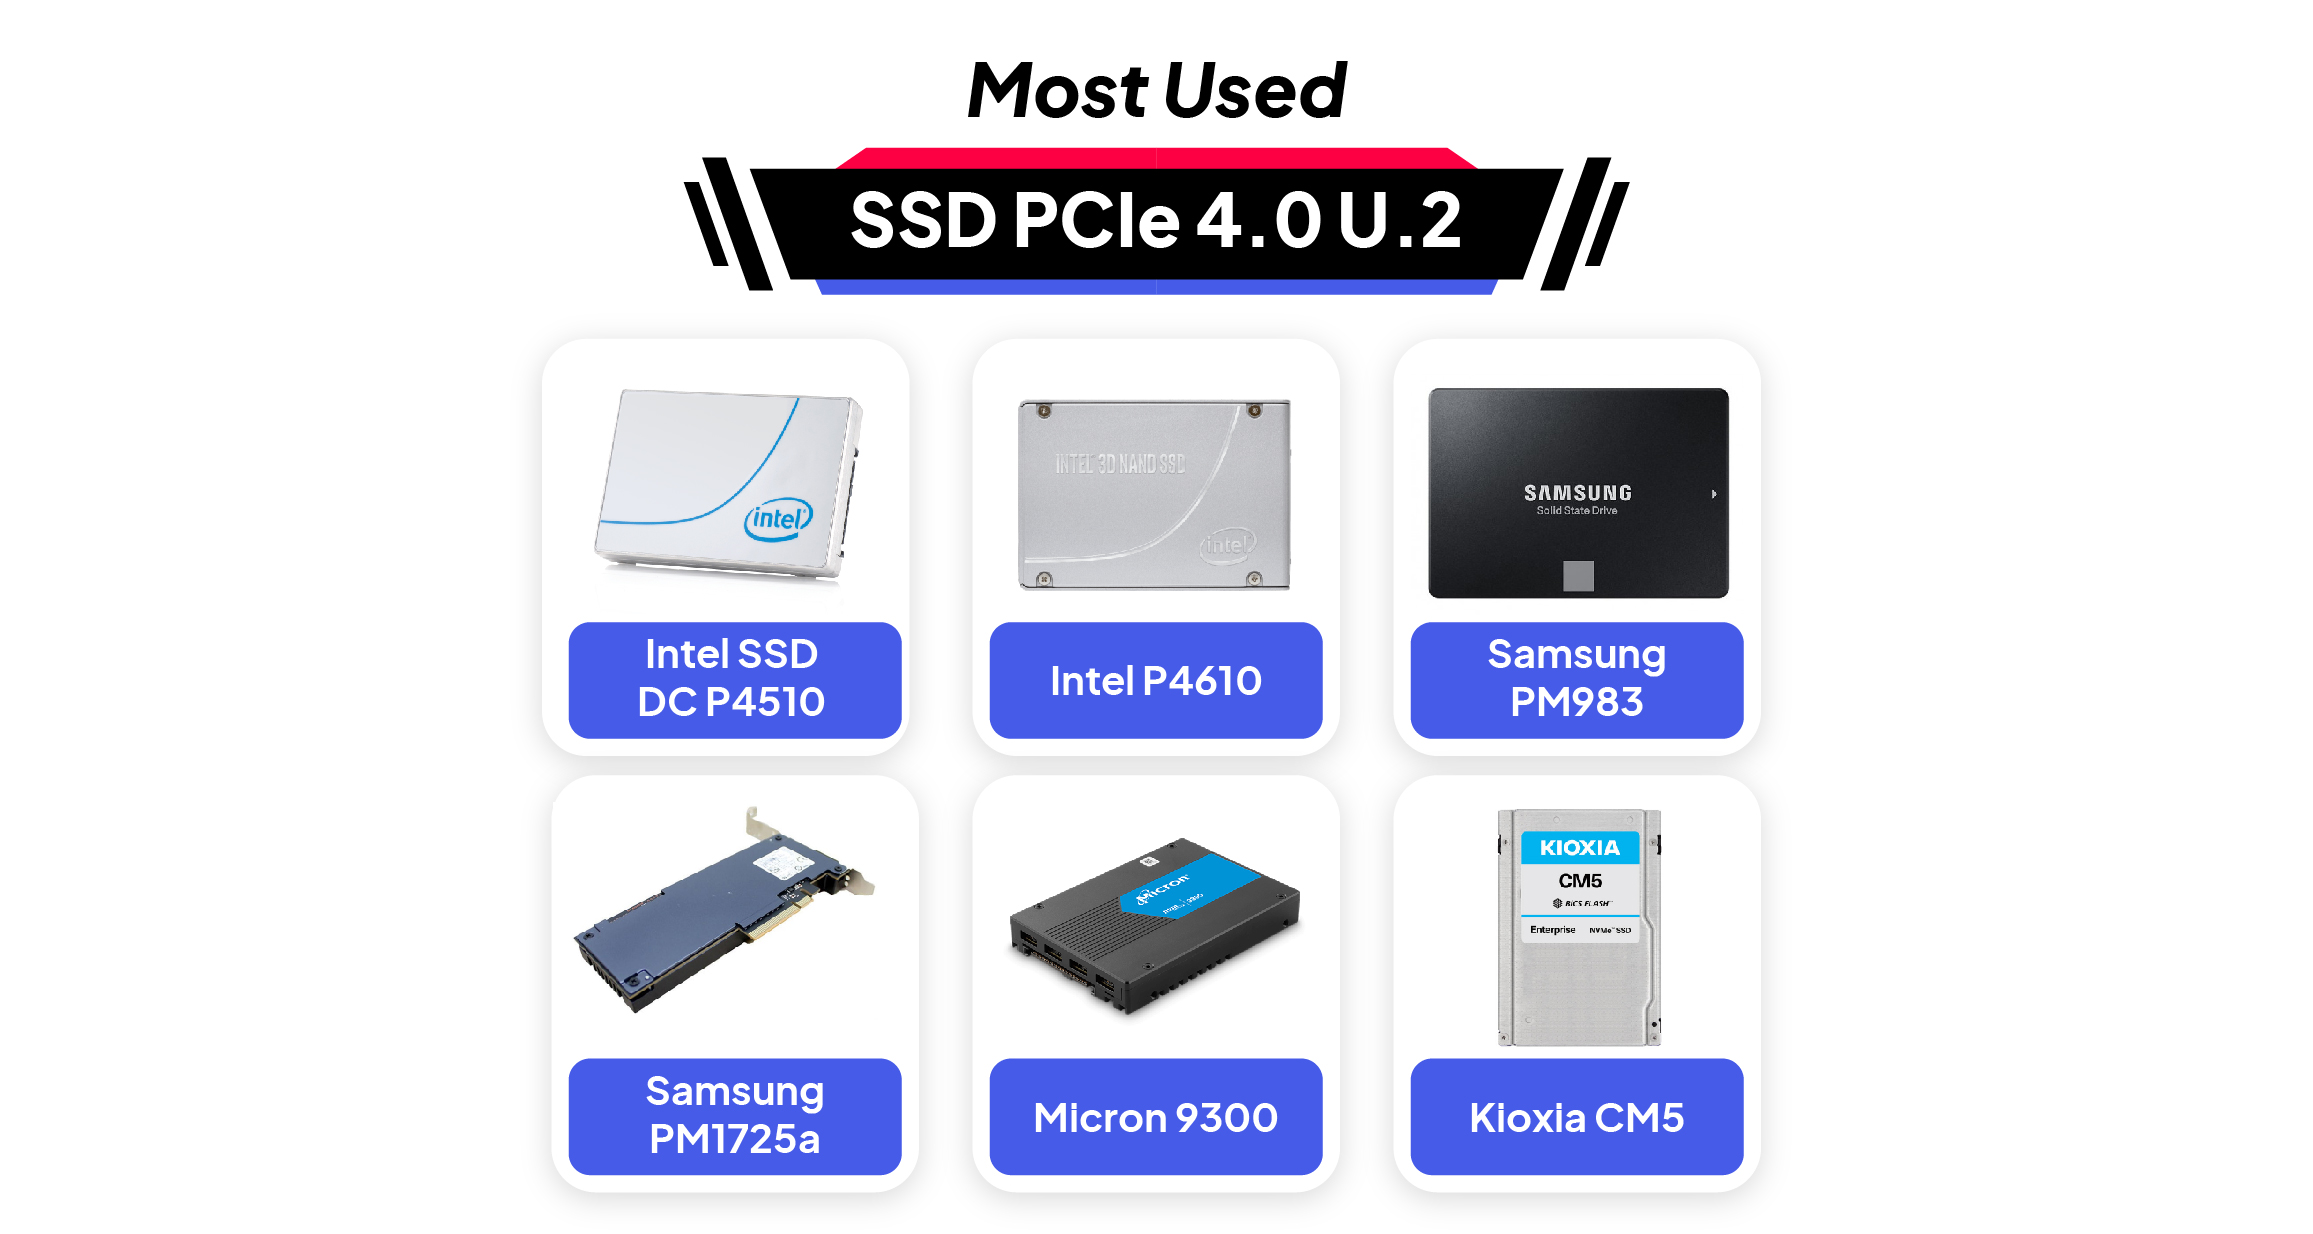 Toko Storage - Most Used SSD PCIe 4.0 U.2